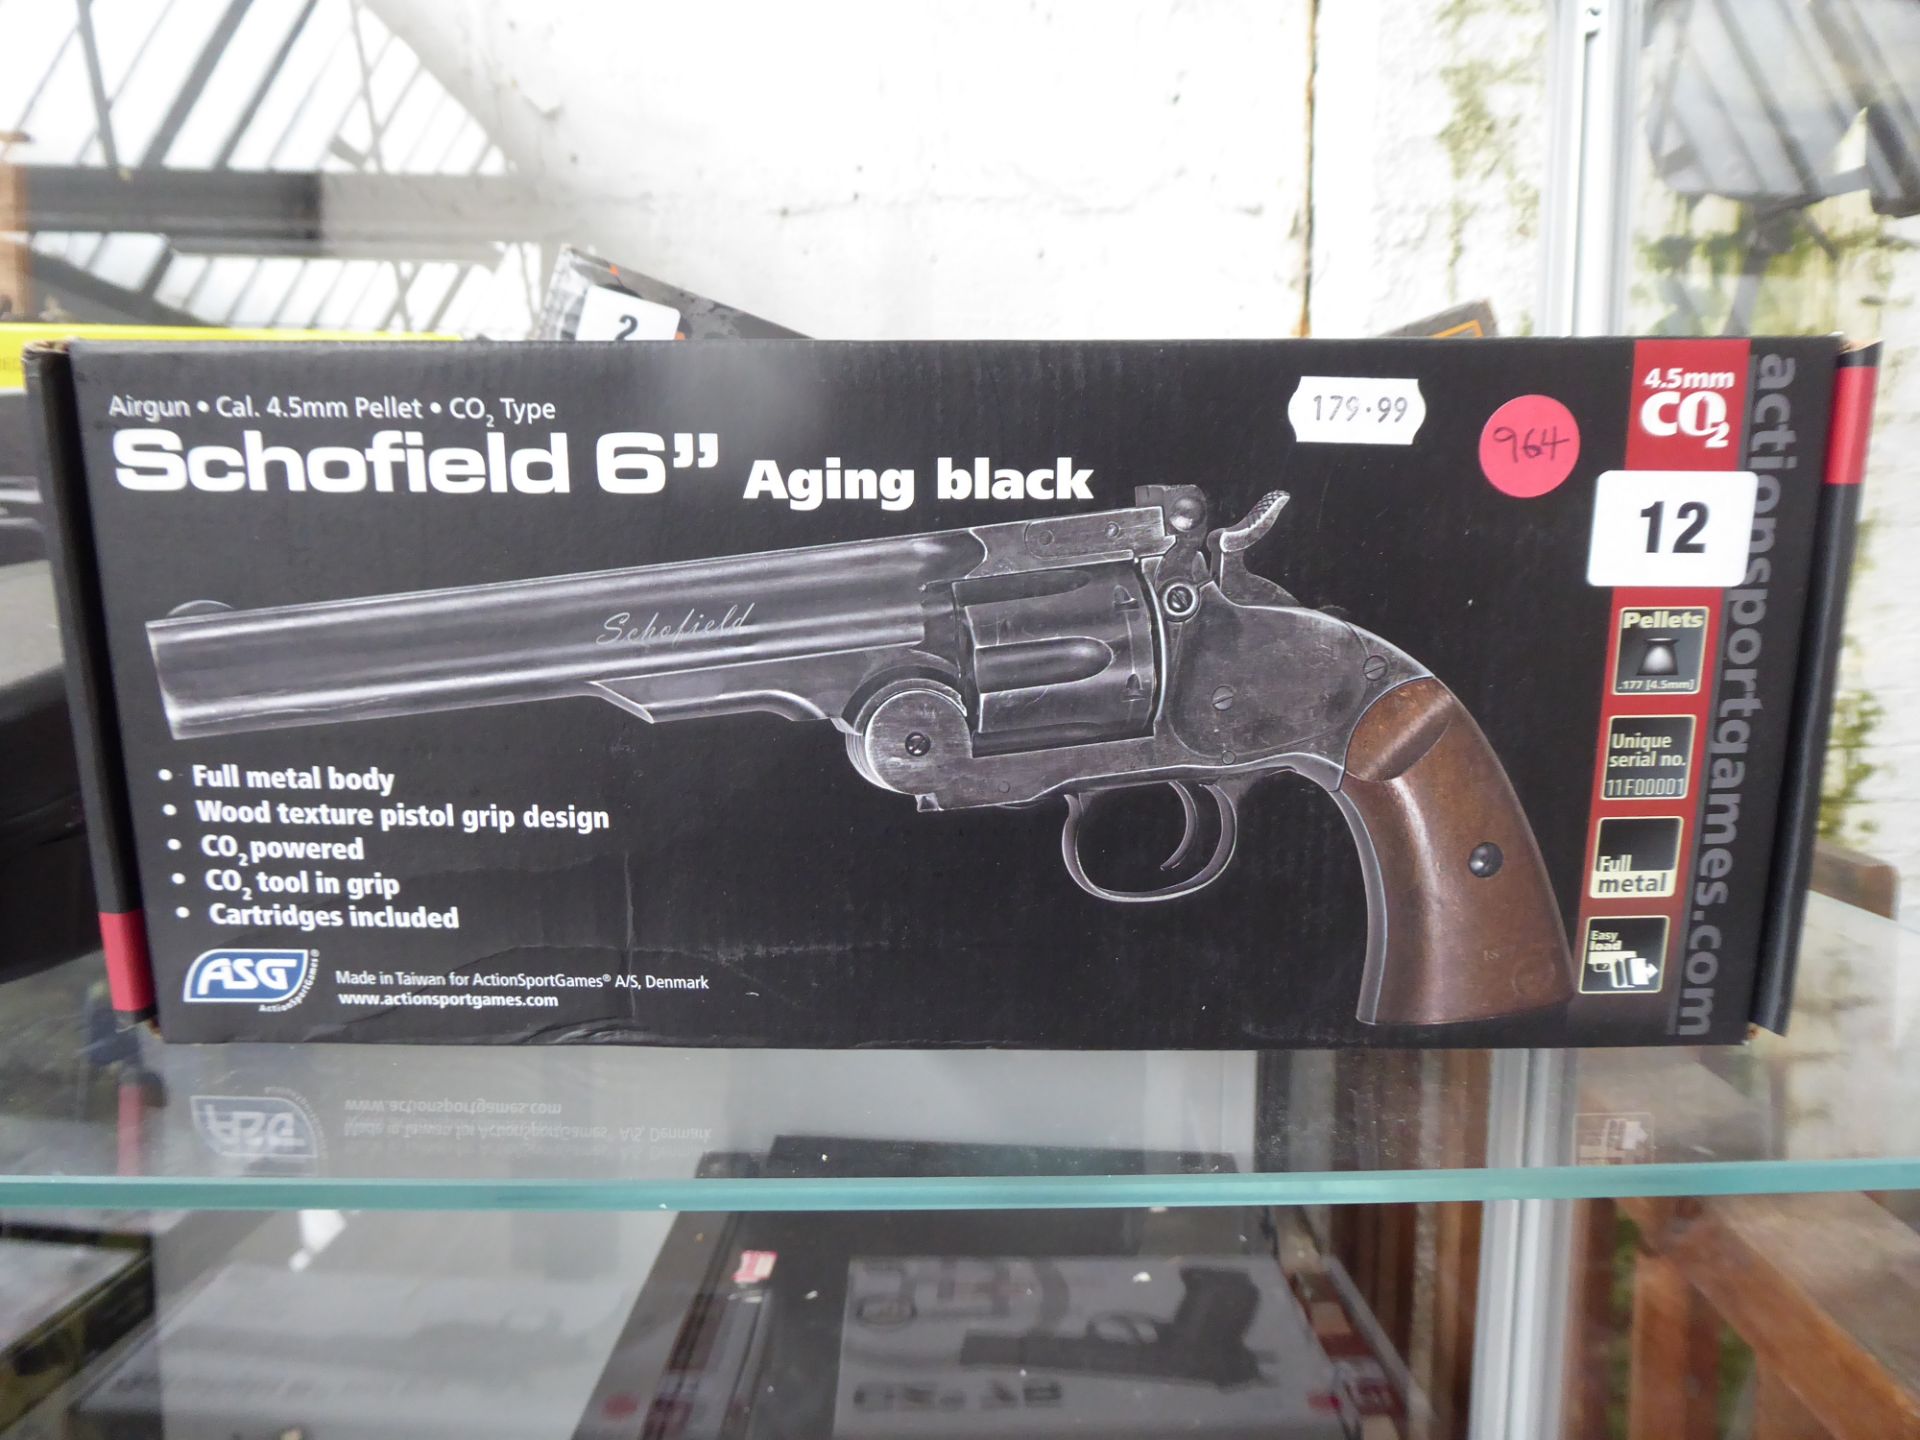 Boxed Schofield C02 .177 pellet air pistol in aging black